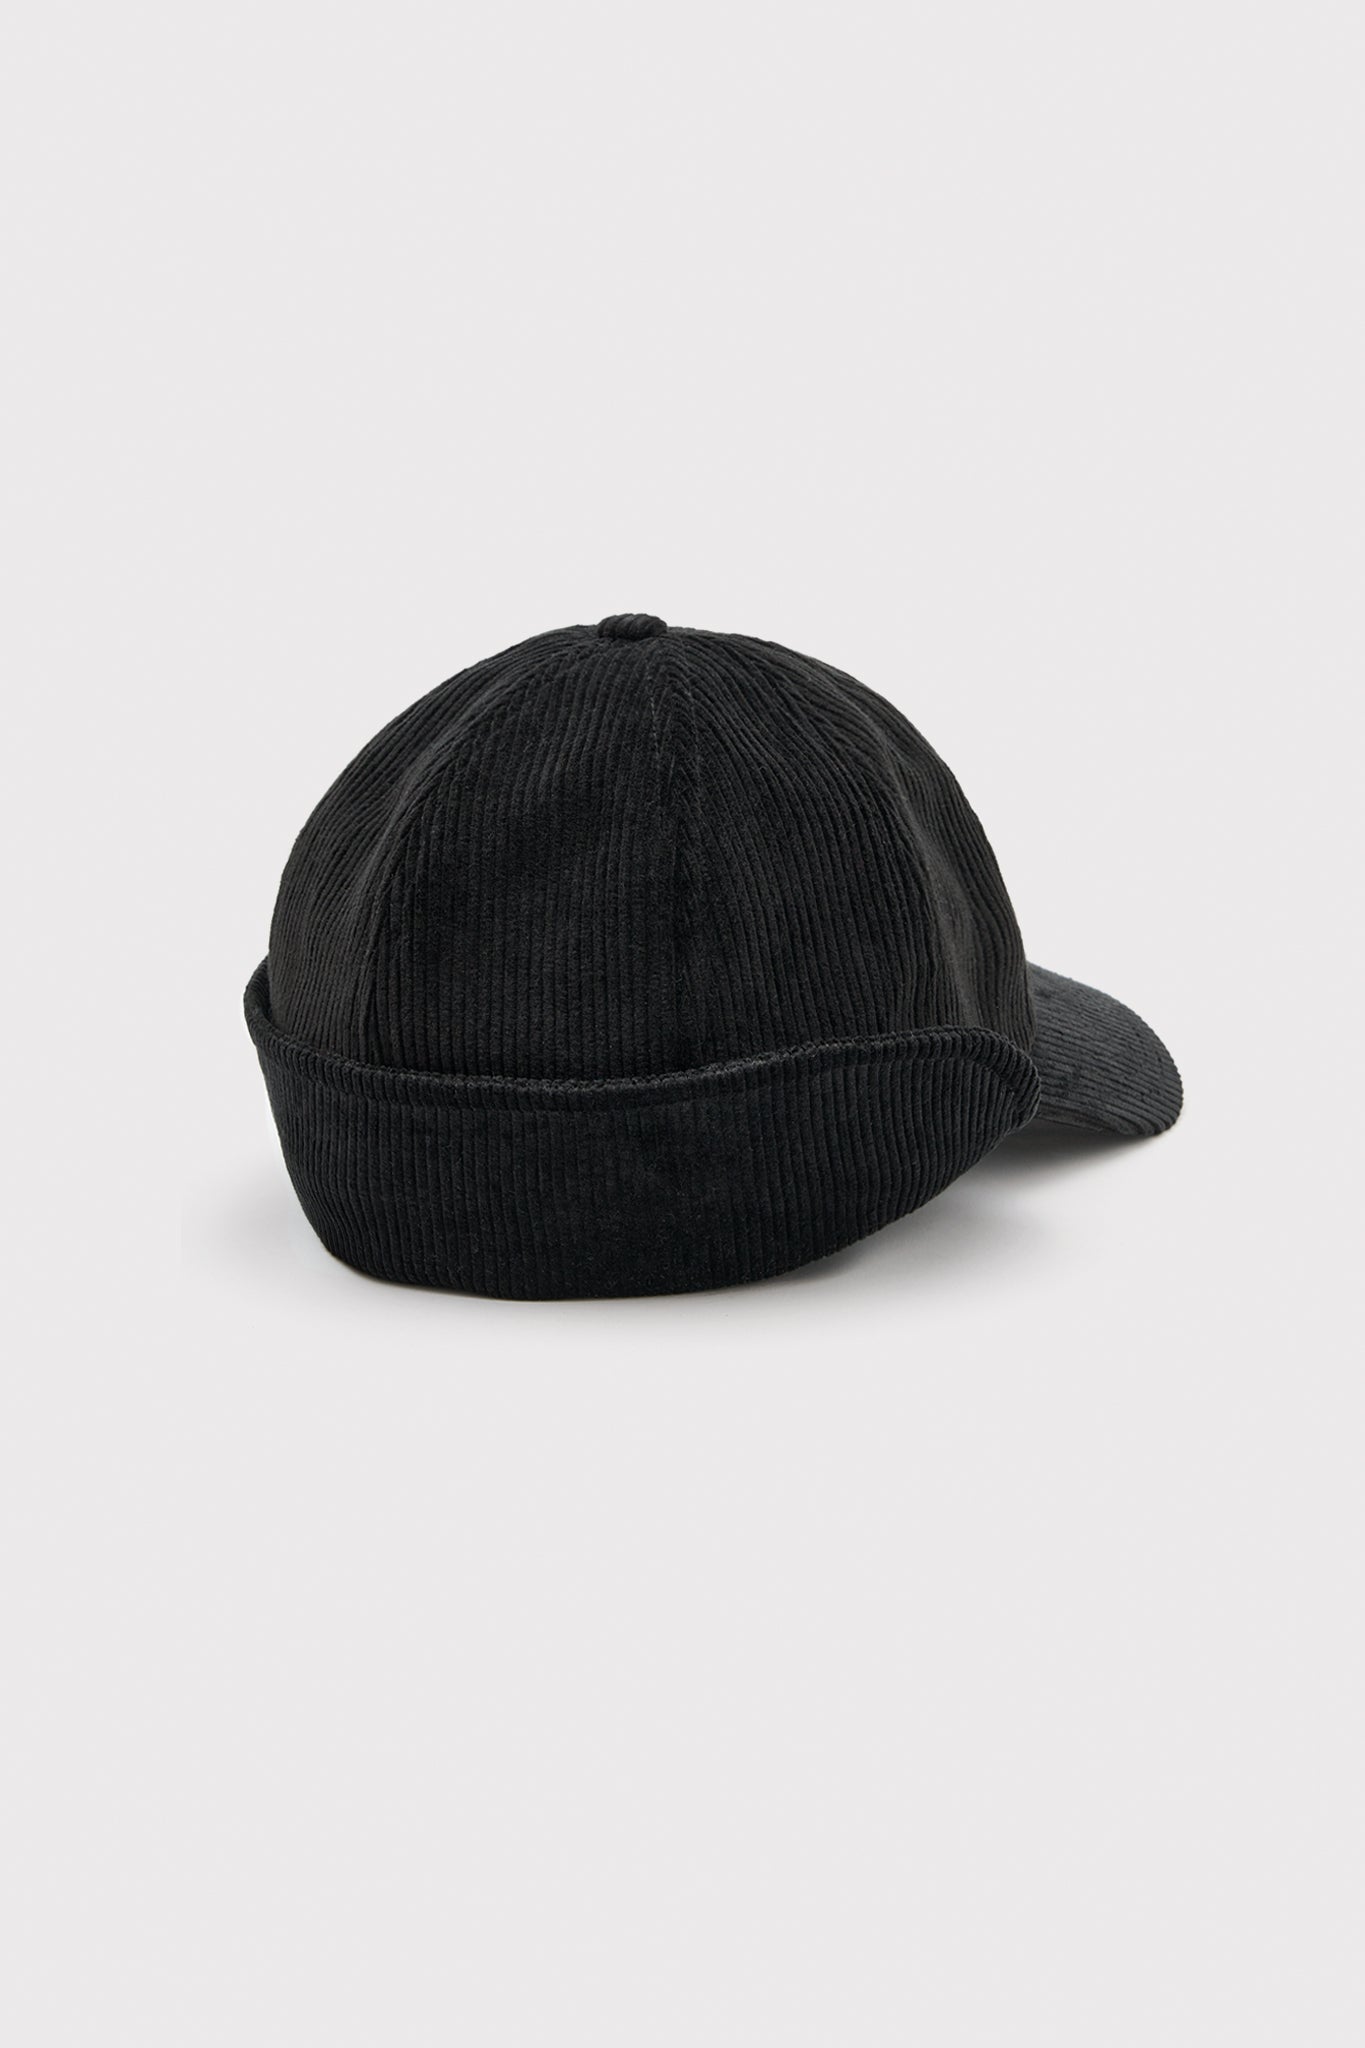 ÉTUDES FLAPCAP CORDUROY BLACK HATS 3